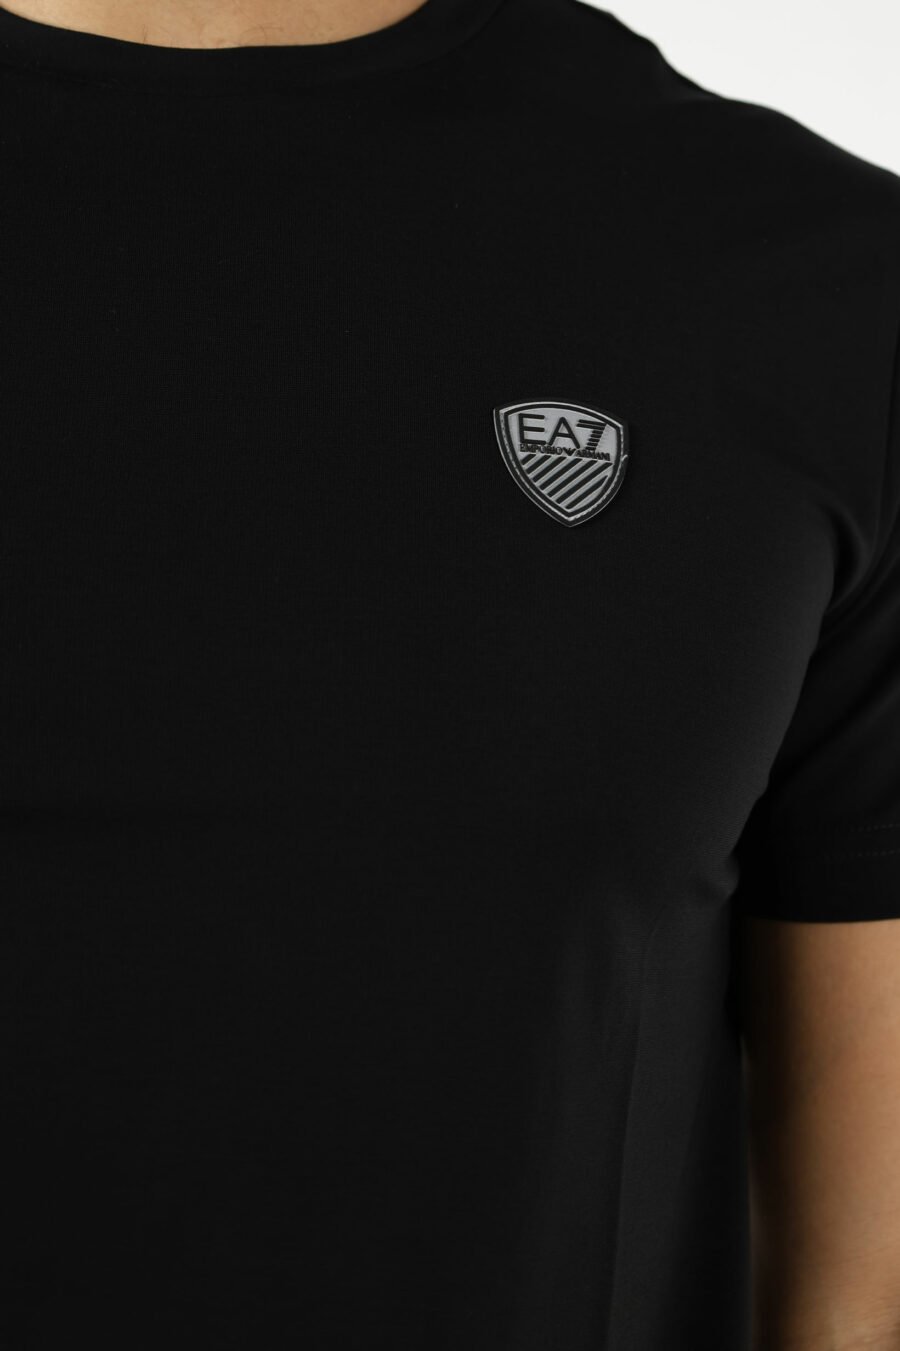 Camiseta negra con minilogo "lux identity" escudo - 110838